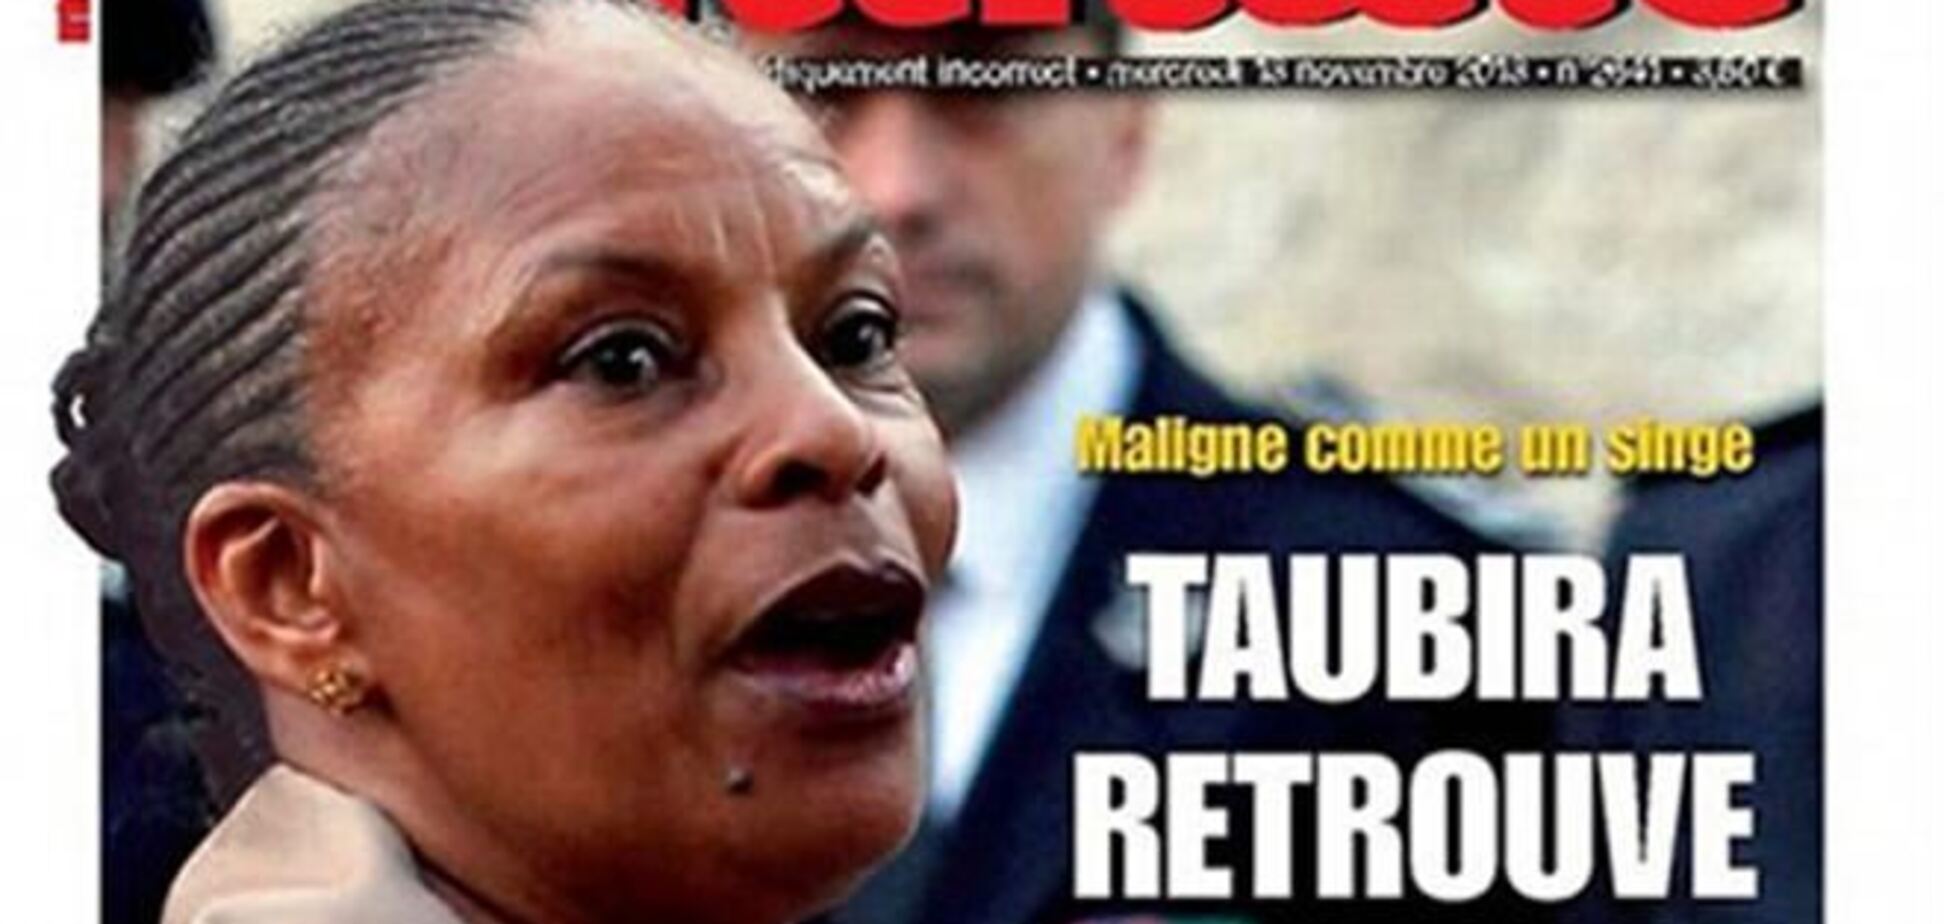 Французький журнал наважився порівняти чорношкірого міністра з мавпою